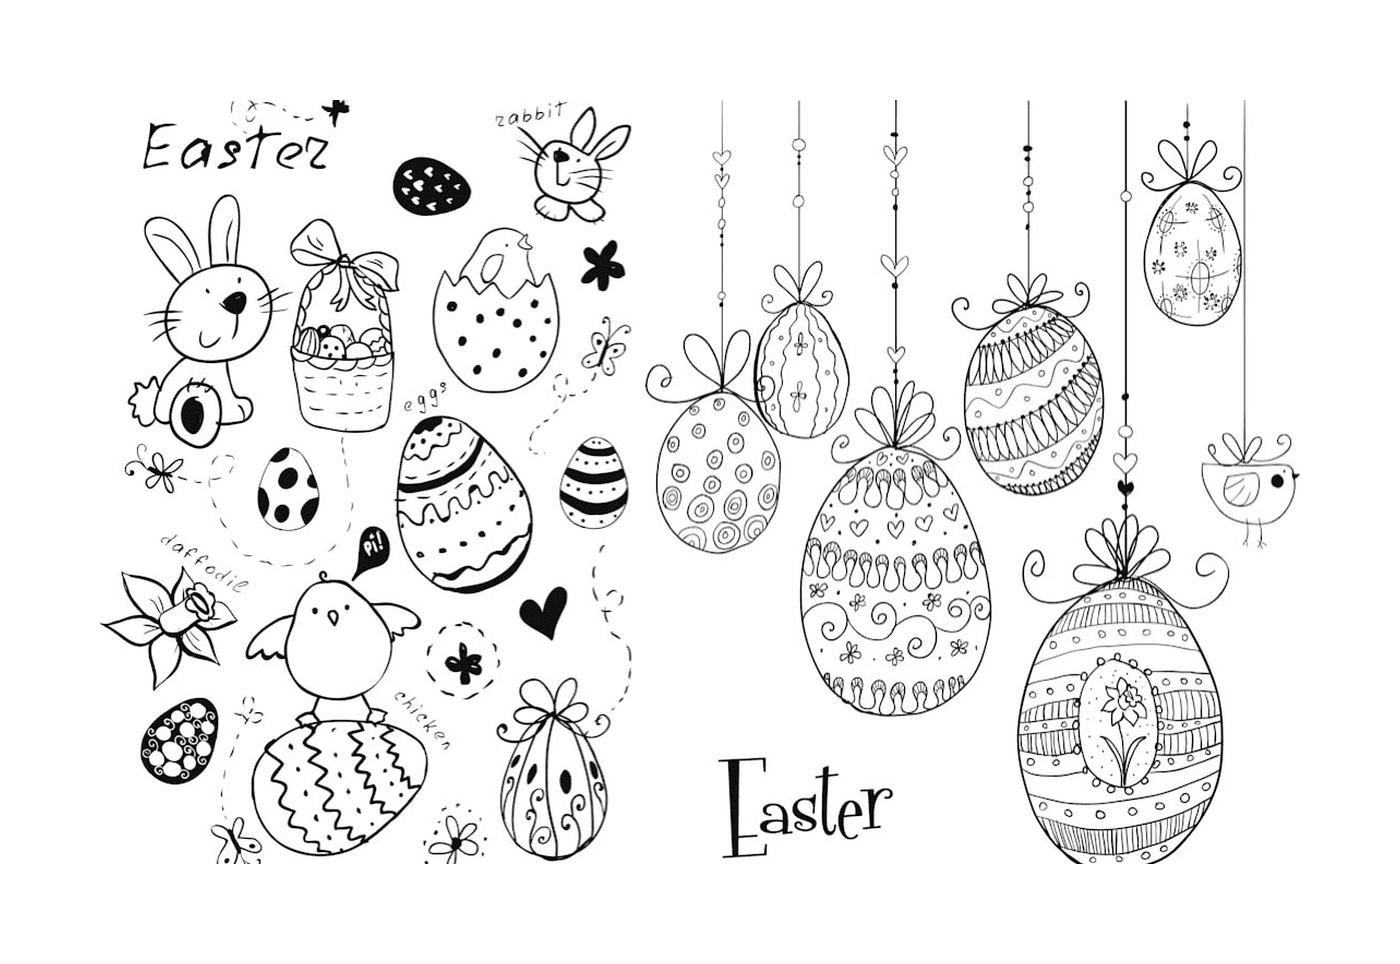  Doodles de Pâques : œufs et lapins